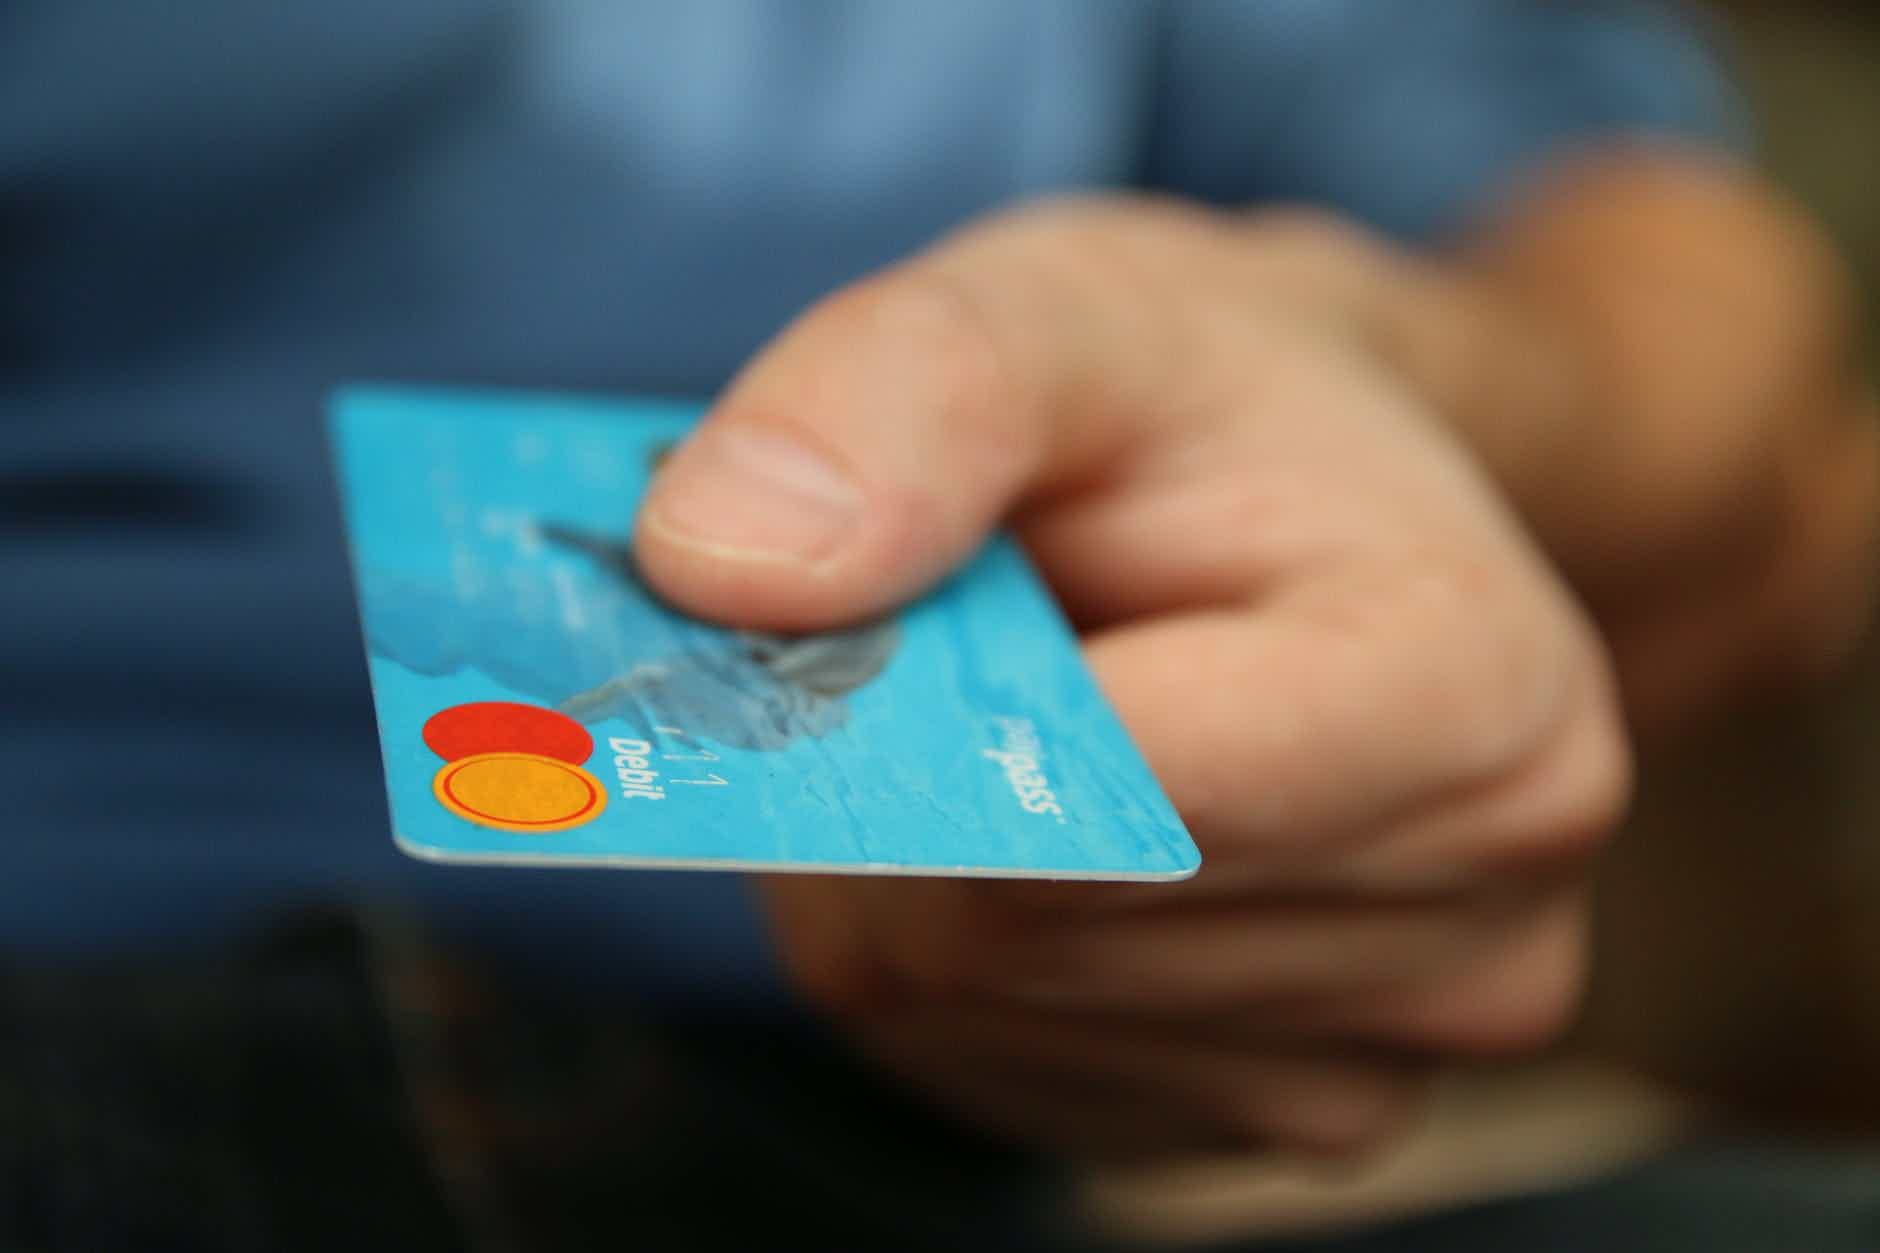 Mas, afinal, quais as opções de cartão de crédito aprova na hora? Fonte: Pexels.